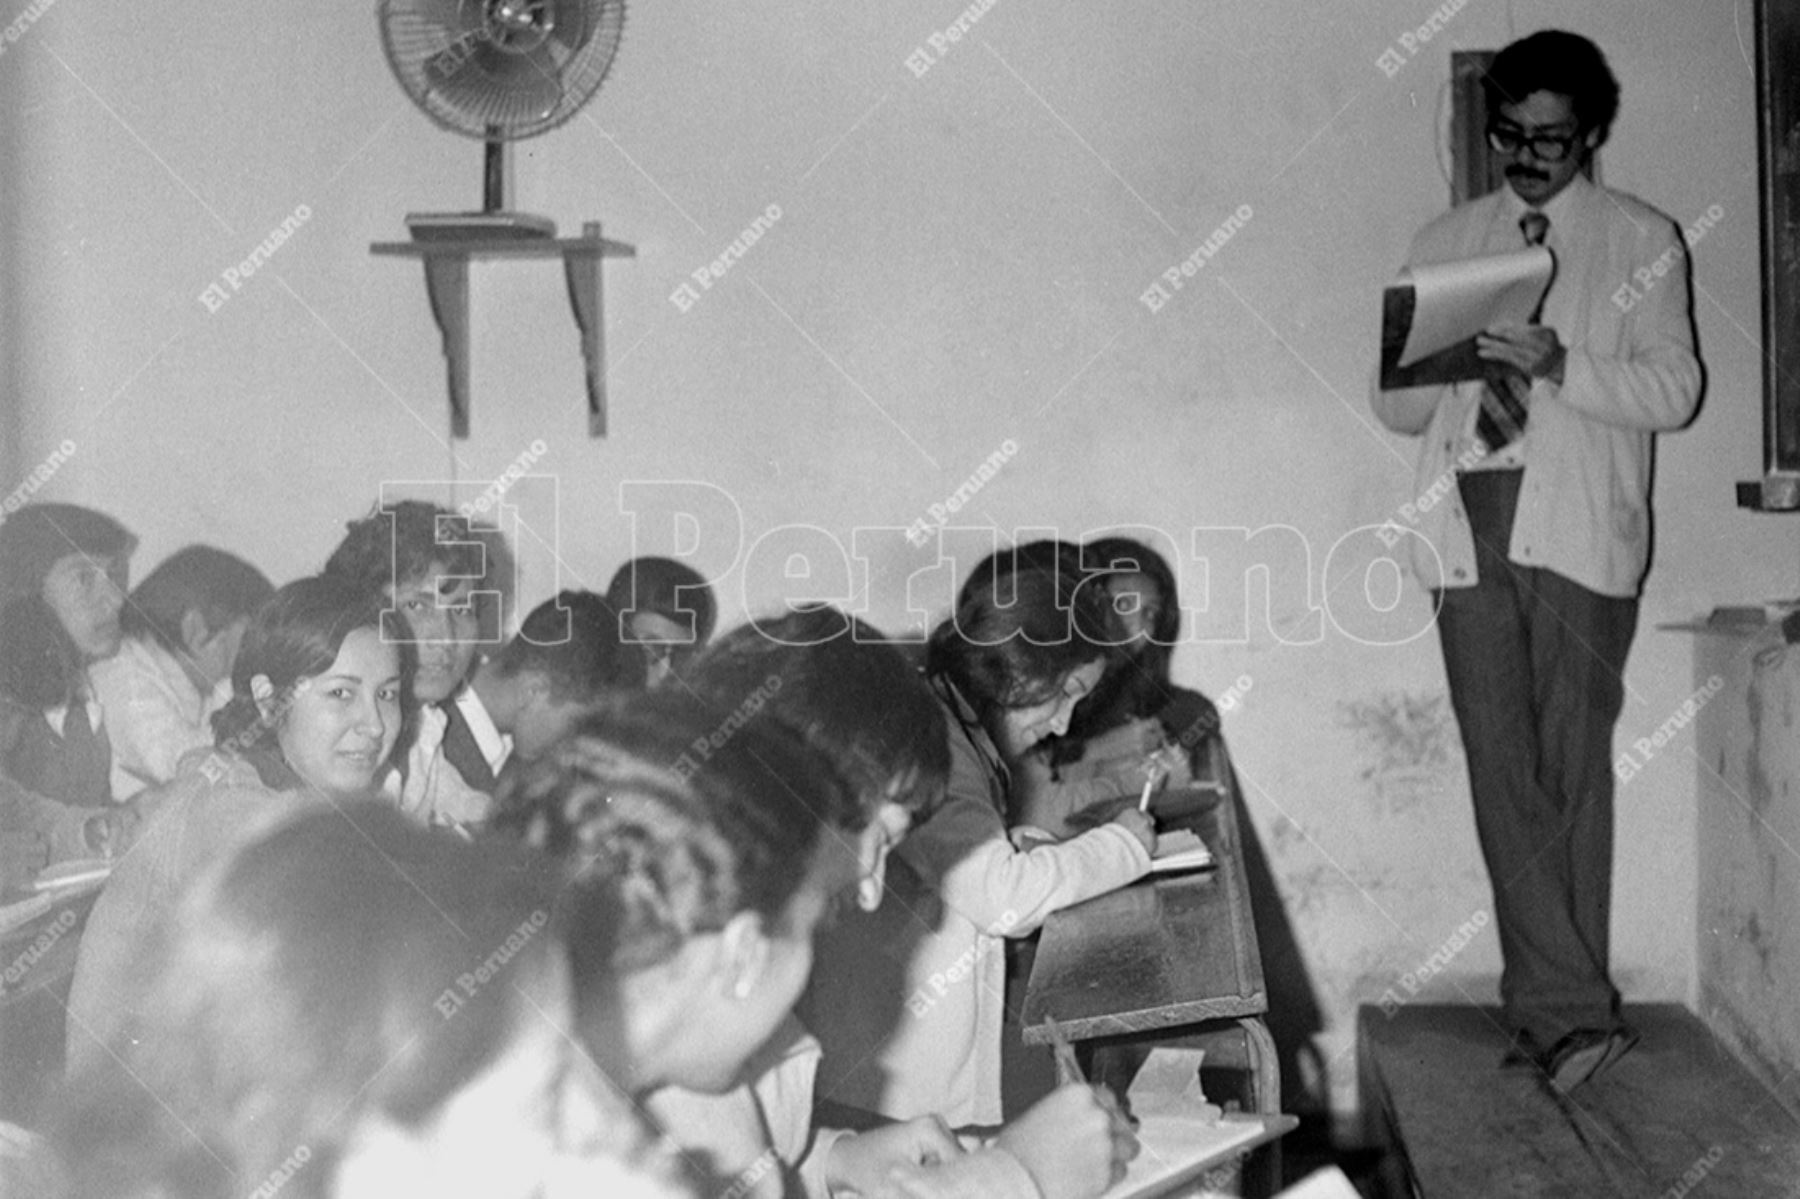 Lima - 10 agosto 1975 / Clases en la academia preuniversitaria Agronomía. Foto: Archivo Histórico de El Peruano / Leoncio Mariscal